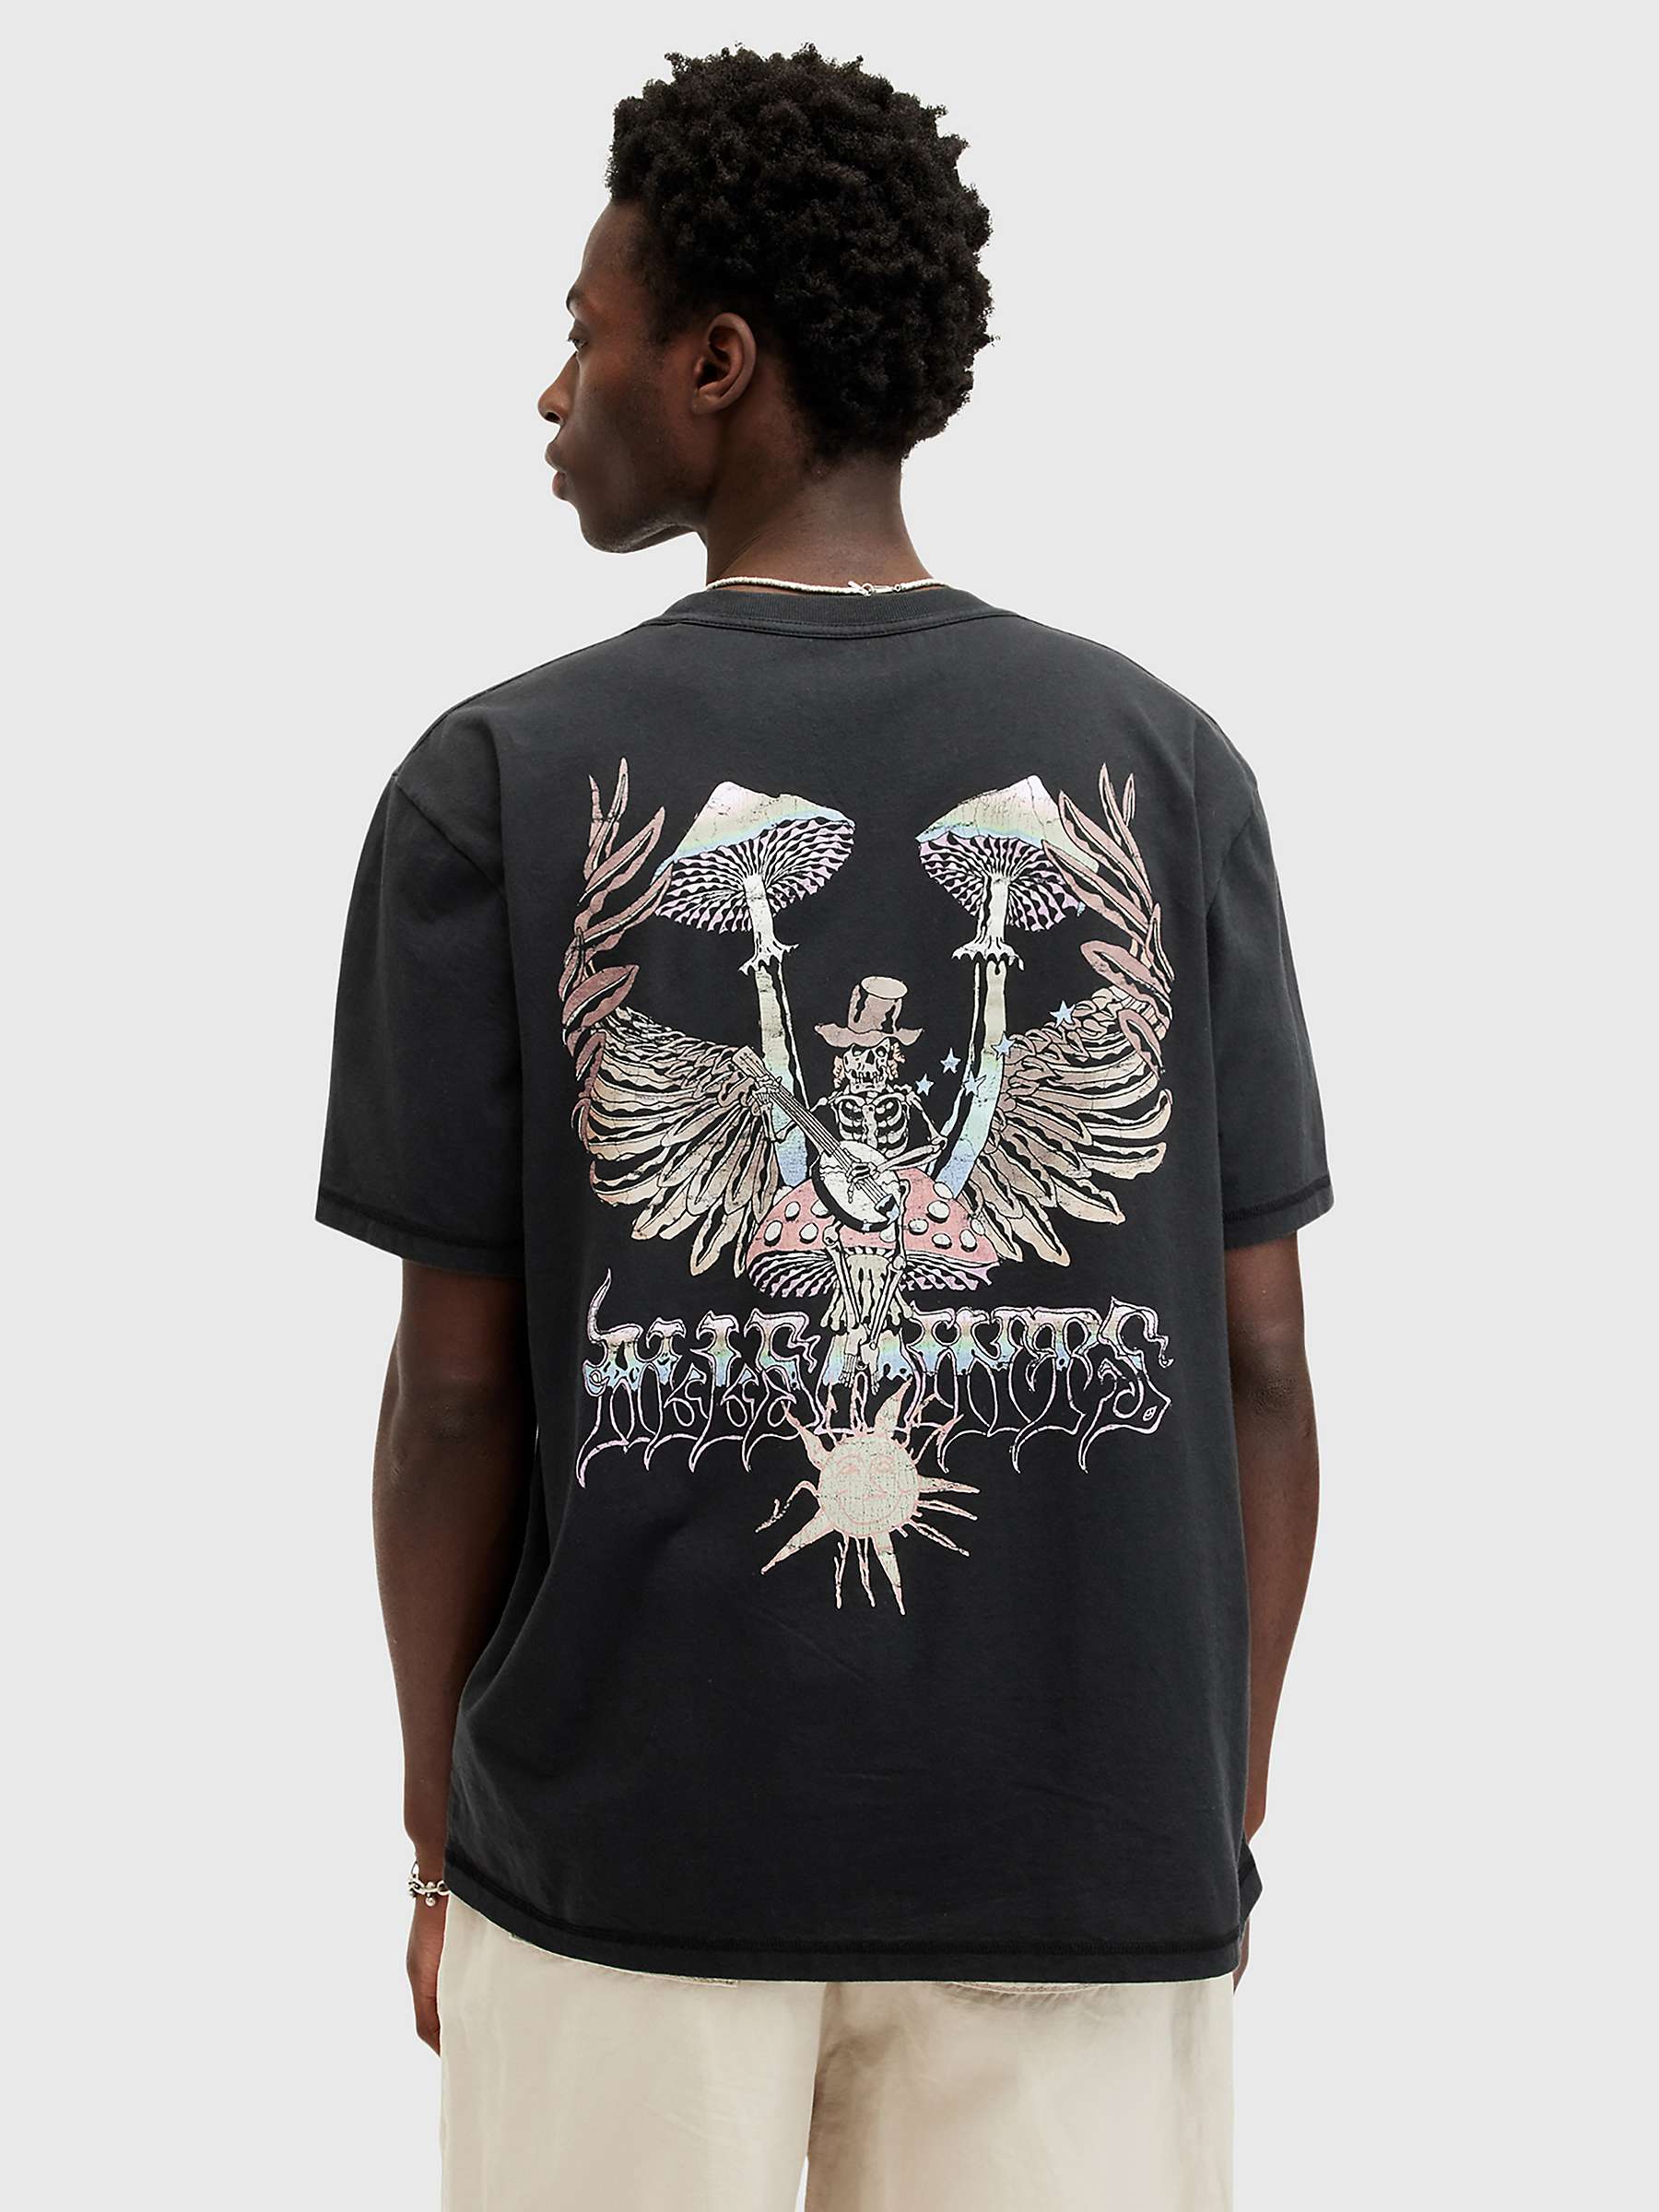 Buy AllSaints Strummer Short Sleeve Crew T-Shirt, Washed Black Online at johnlewis.com